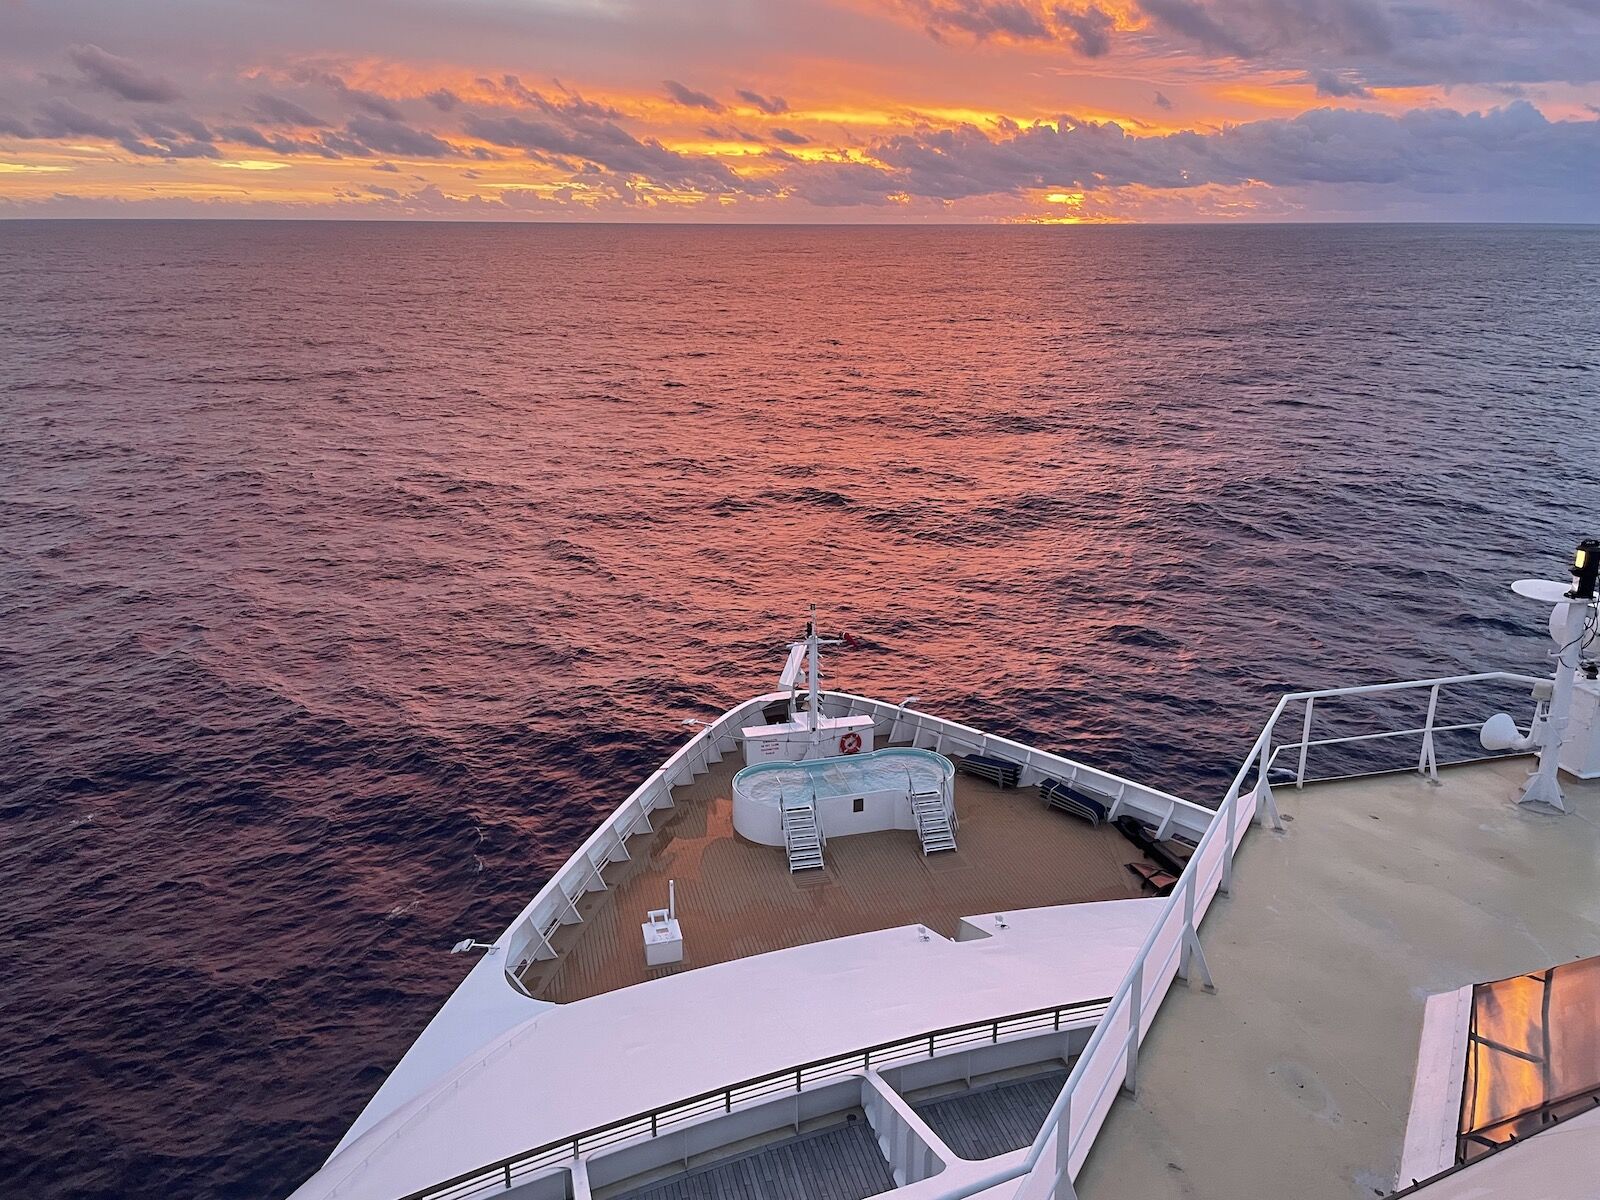 africa cruises - sunset near madagascar